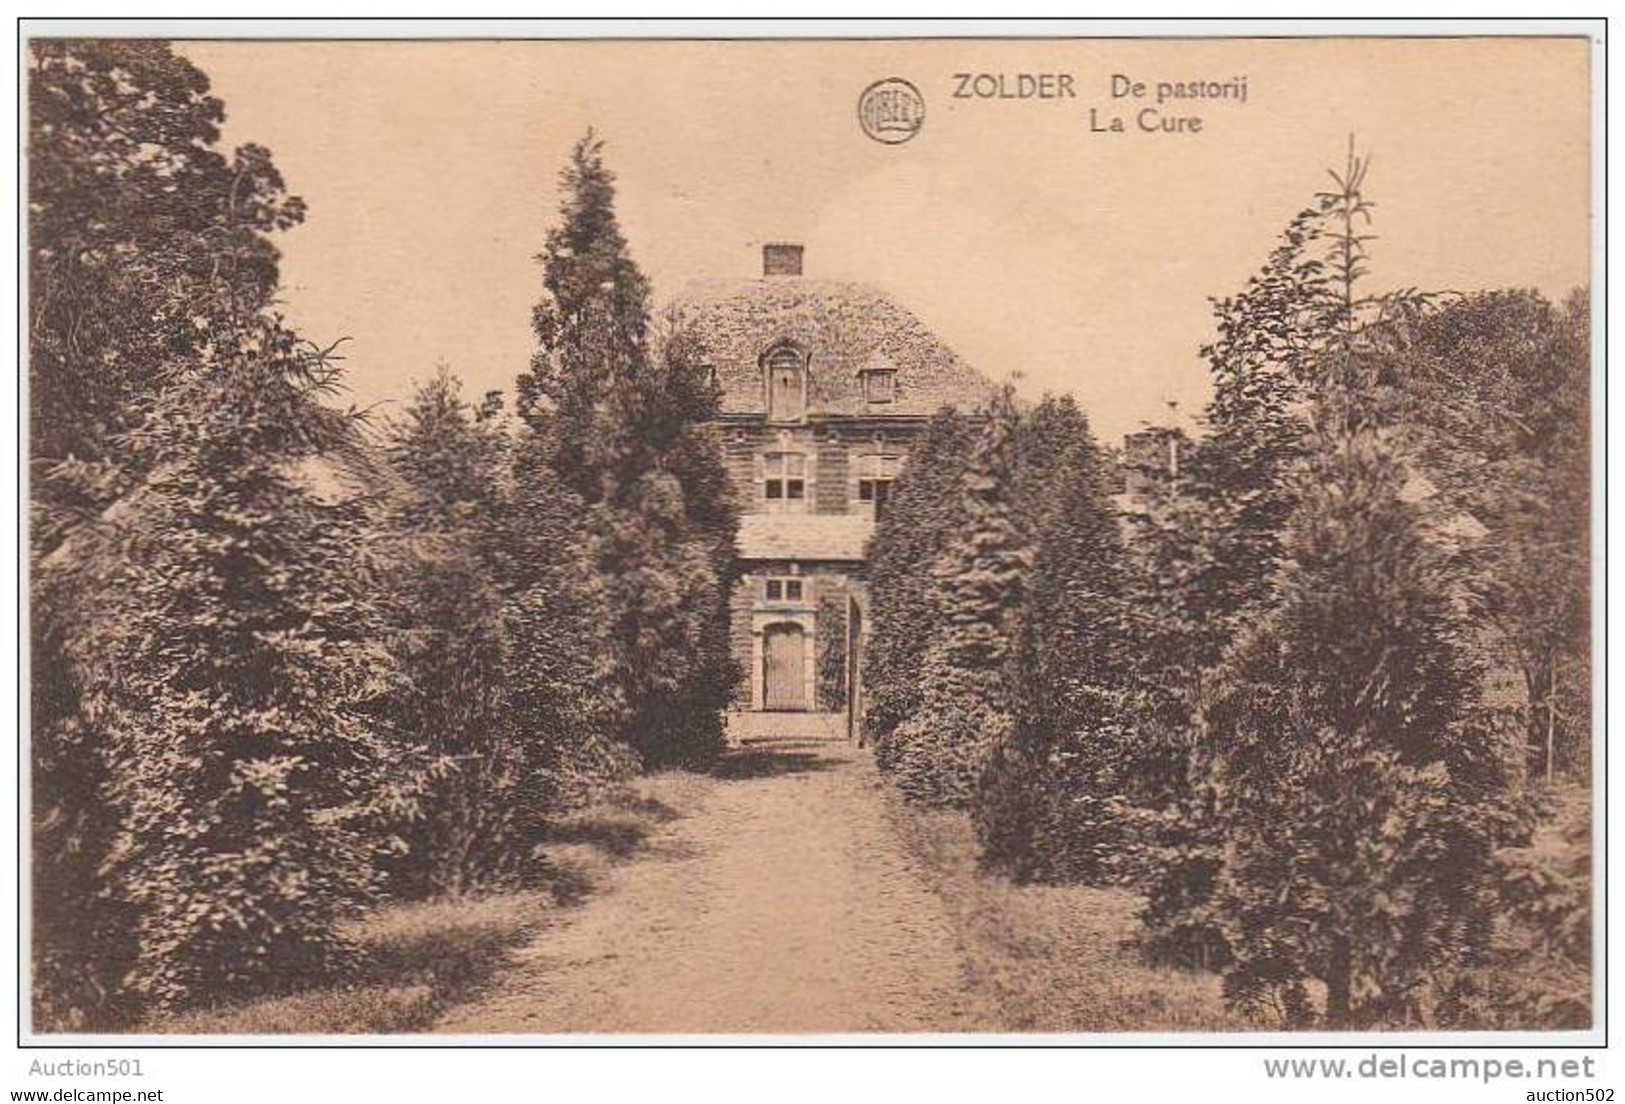 17126g DE PASTORIJ - La Cure - Zolder - 1924 - Heusden-Zolder